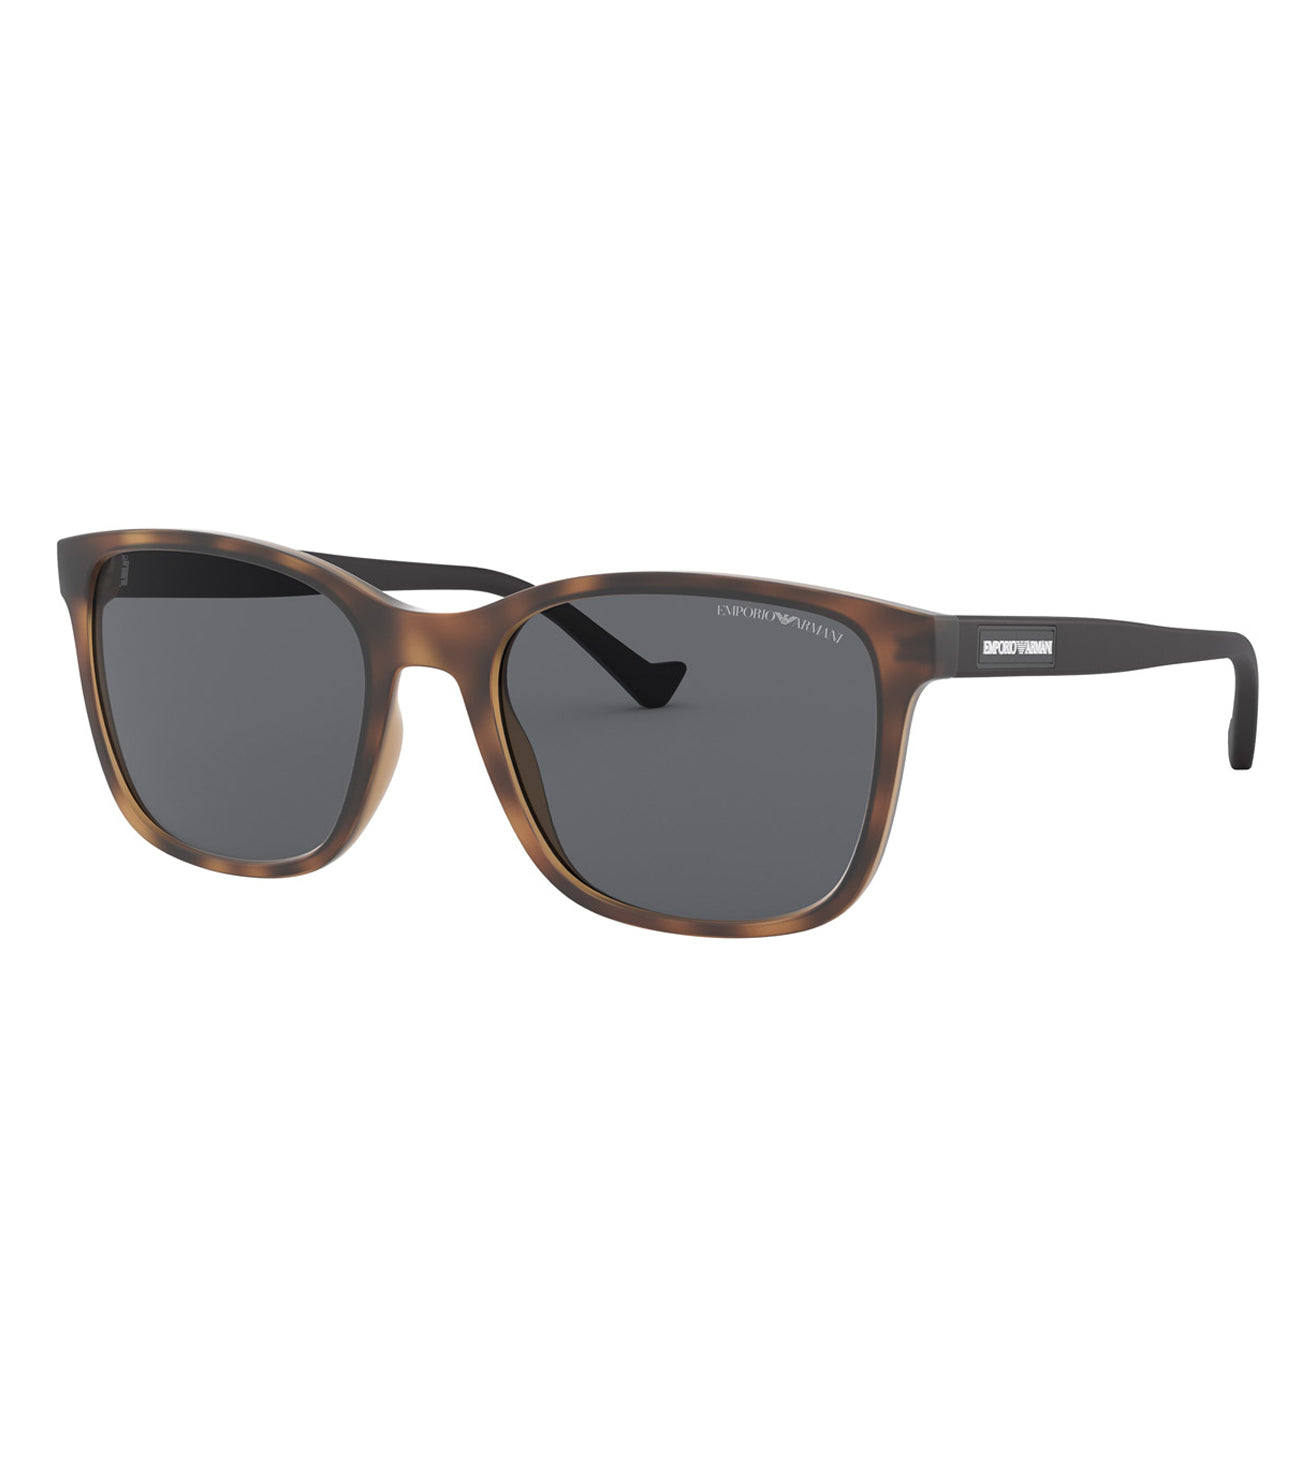 Emporio Armani Men's Grey Square Sunglasses